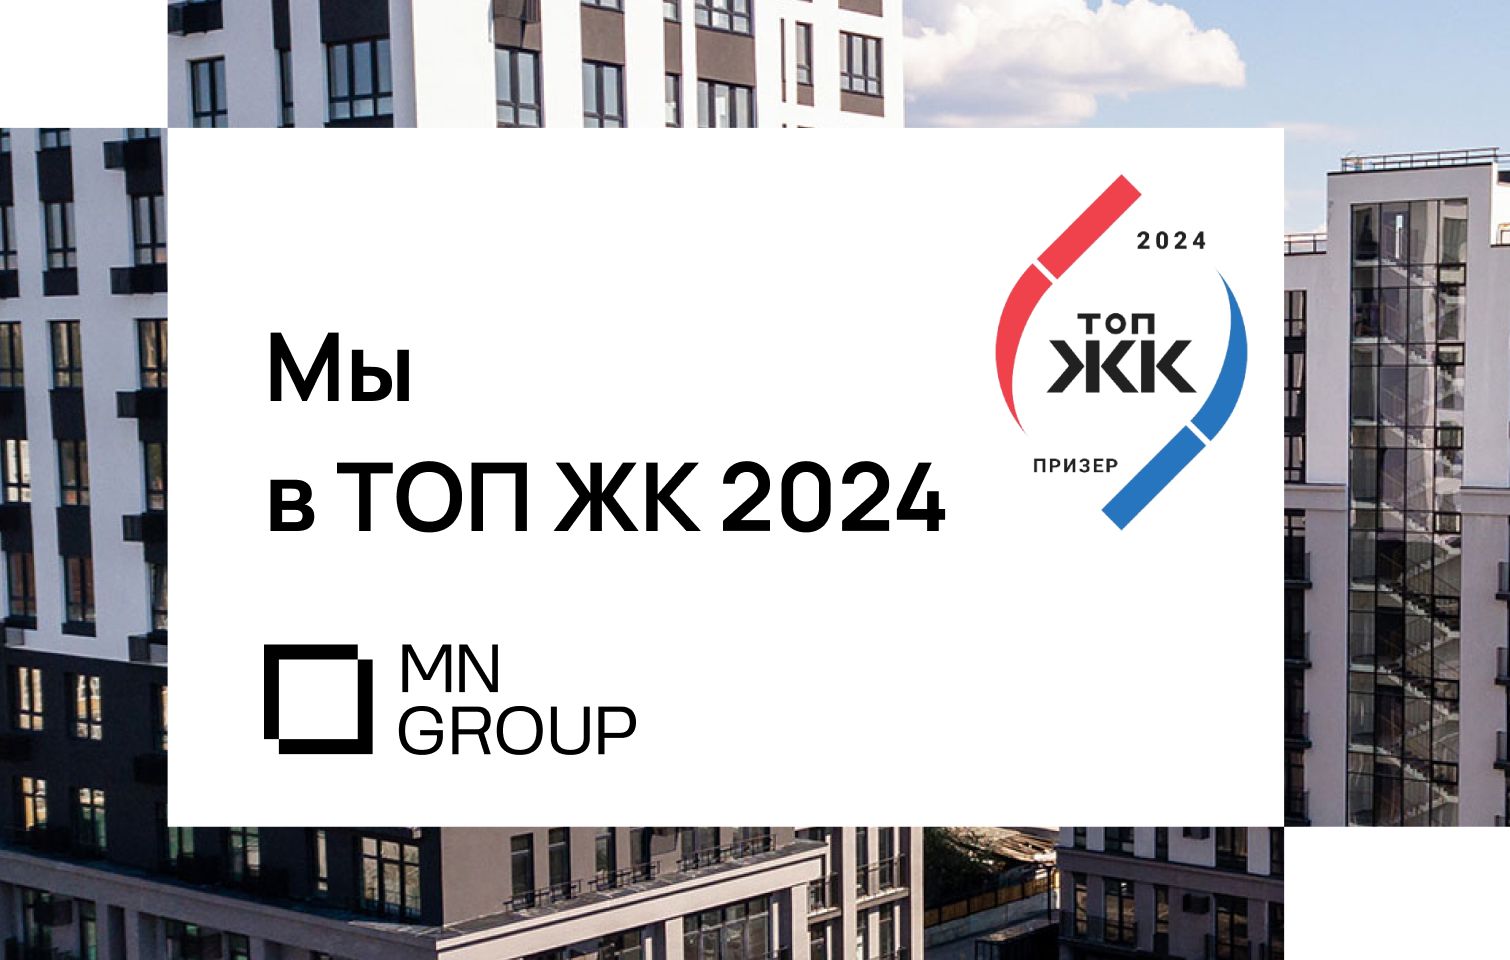 Проекты MN Group в ТОП ЖК-2024!